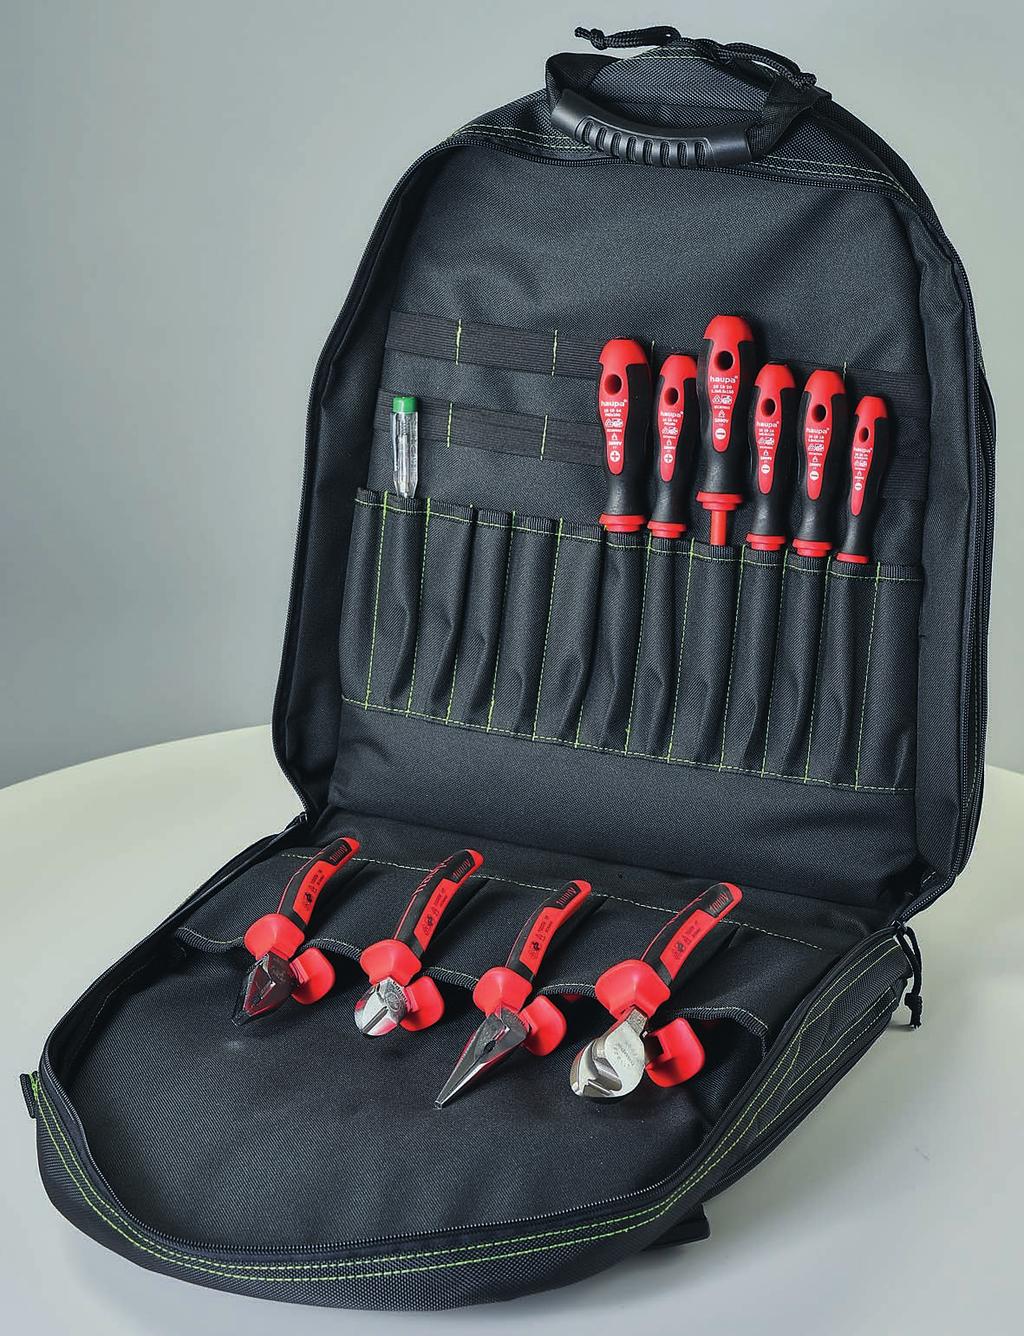 Cikkszám 221277 11 részes, 440 x 500 x 220 mm BackpackPro Basic 1000 V Szerszámtartó hátizsák a professzionális felhasználók részére, 3 részes, az aljáig lenyitható önálló rekeszekkel; elöl